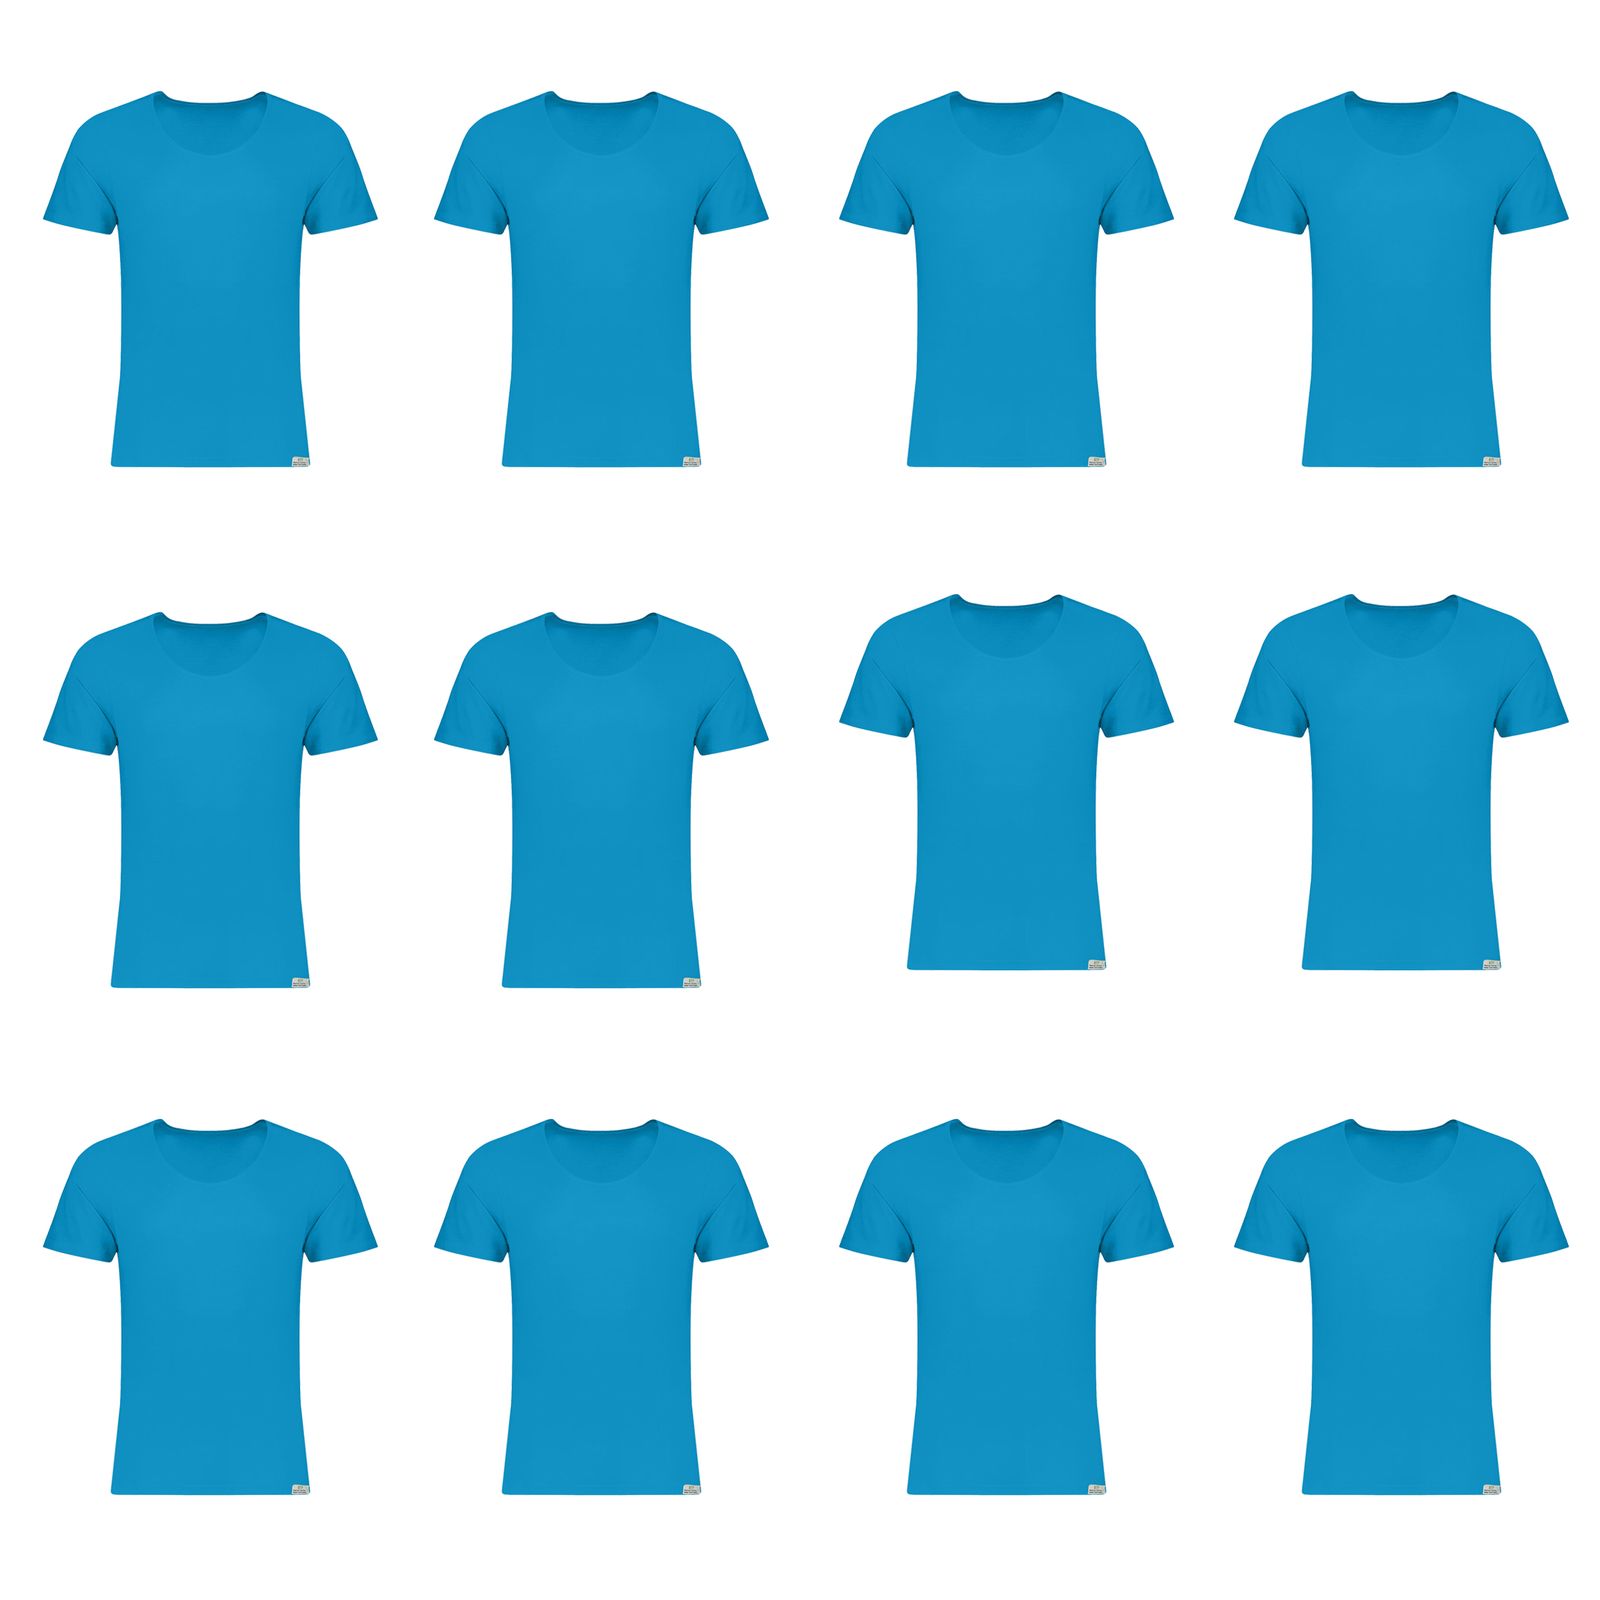 زیرپوش آستین دار مردانه برهان تن پوش مدل 3-02 بسته 12 عددی رنگ آبی فیروزه ای